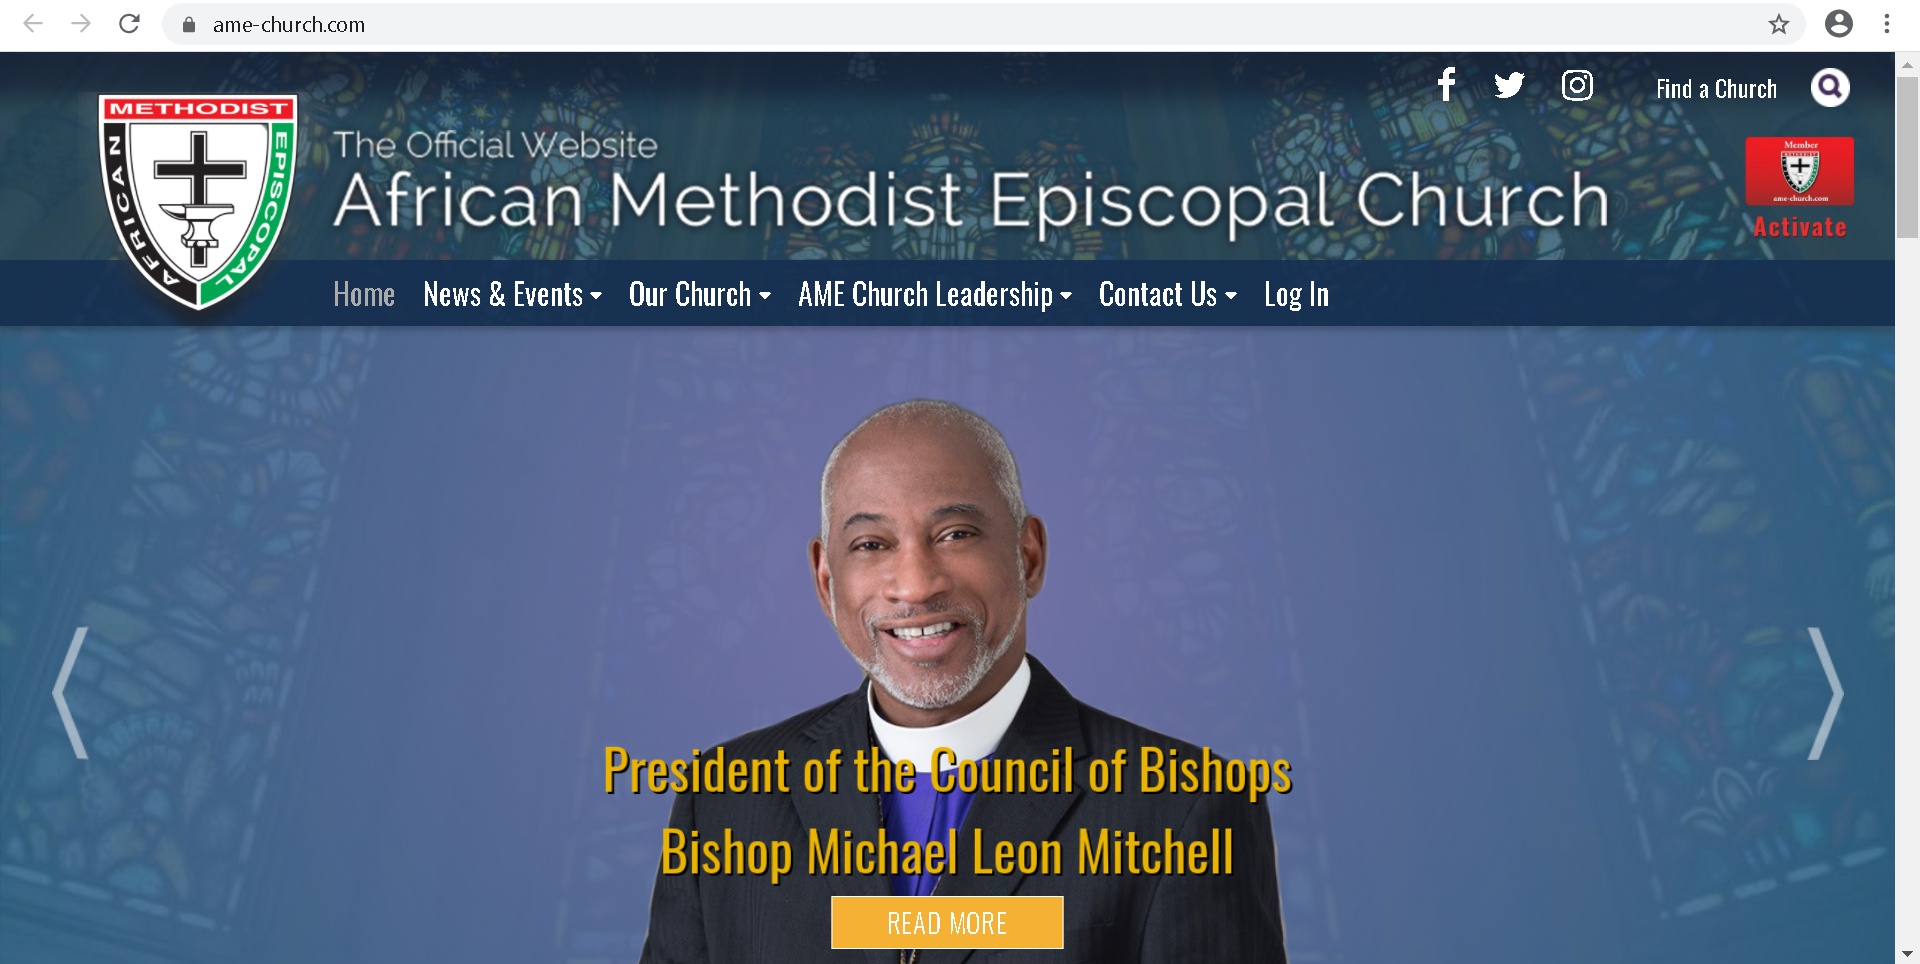 African Methodist Episcopal Church - Resources 2022